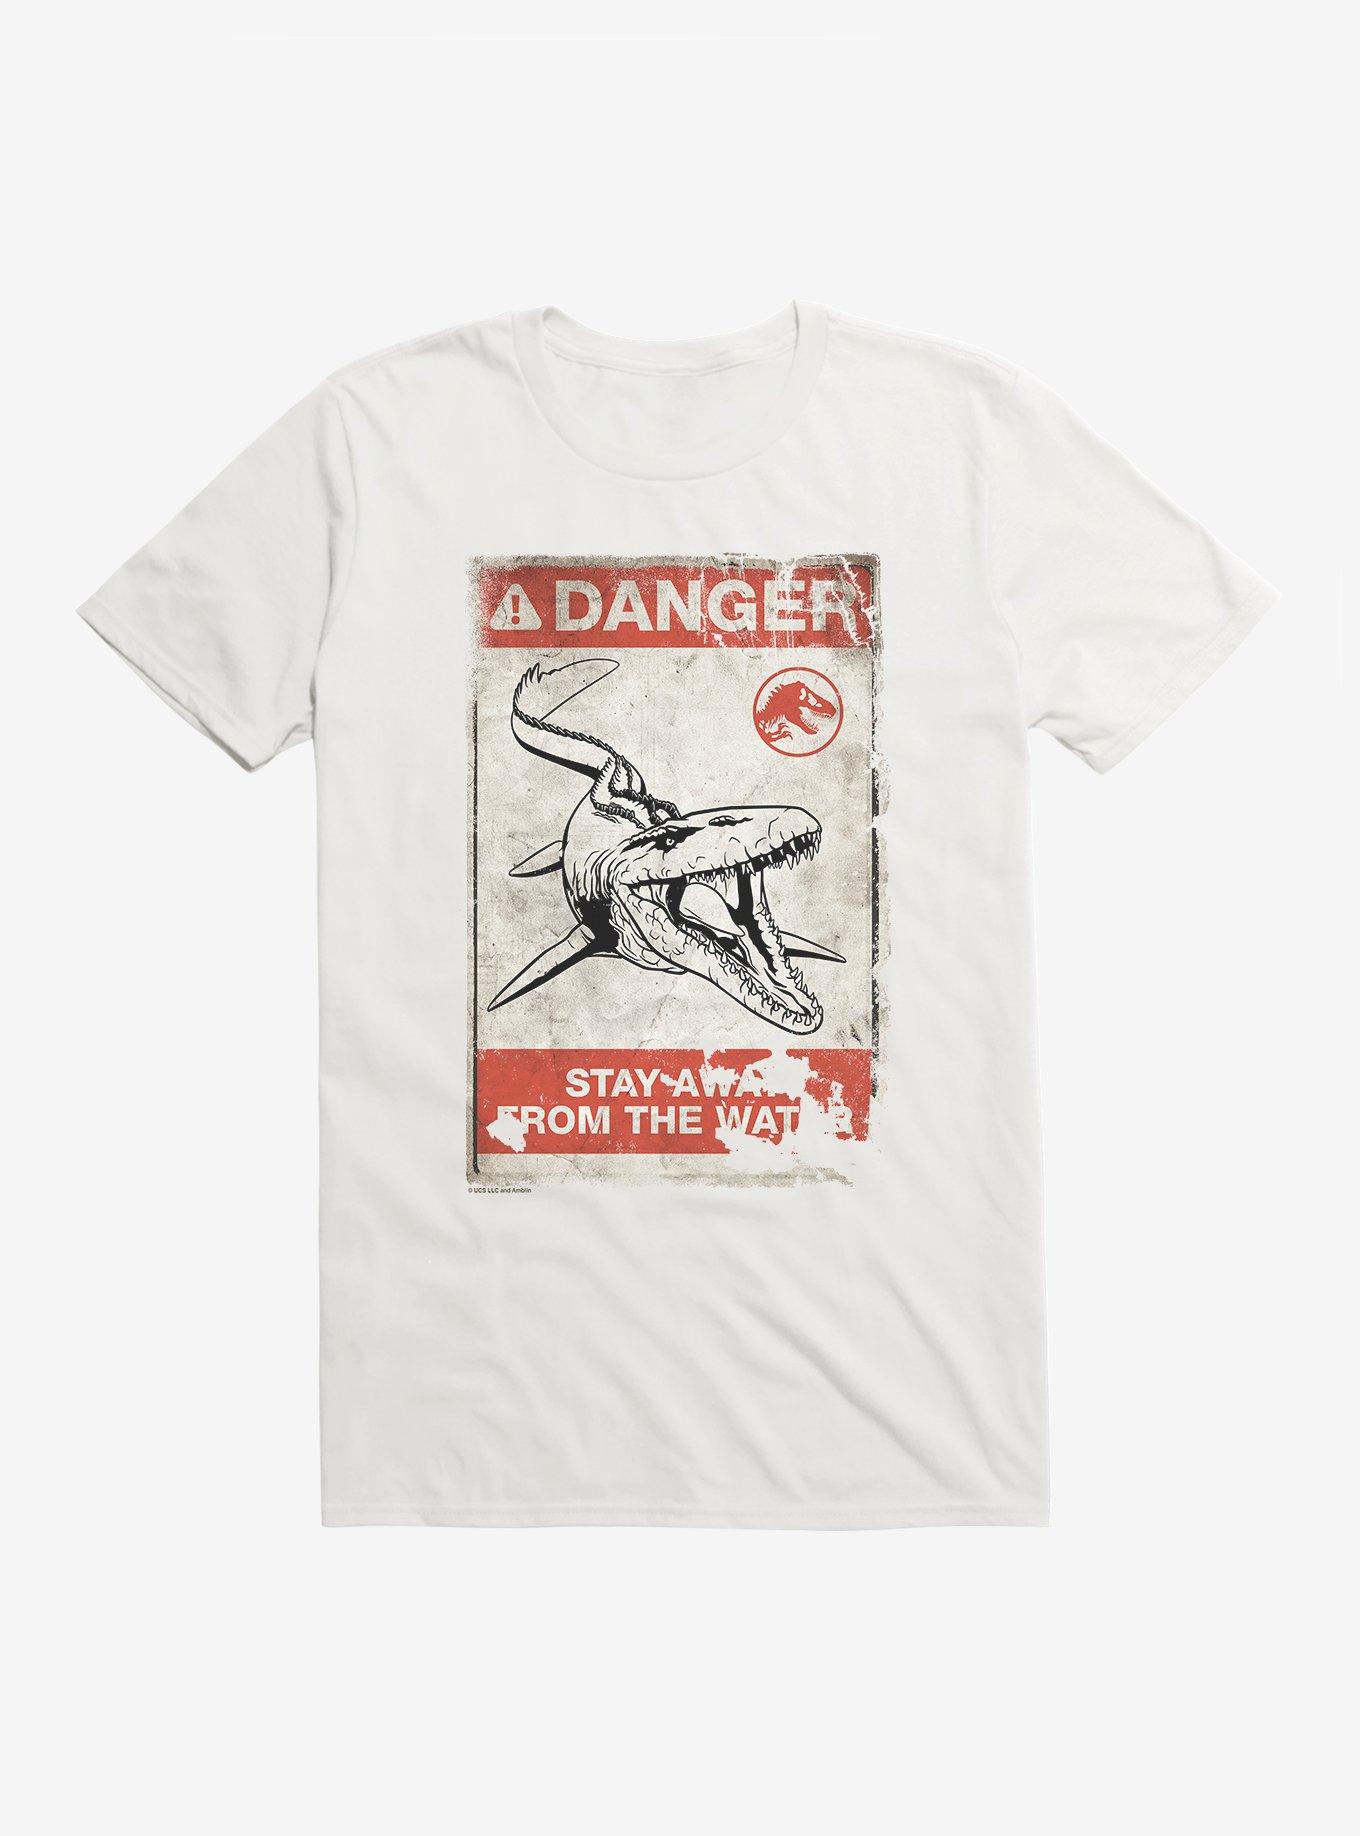 Jurassic World Dominion Danger T-Shirt, WHITE, hi-res